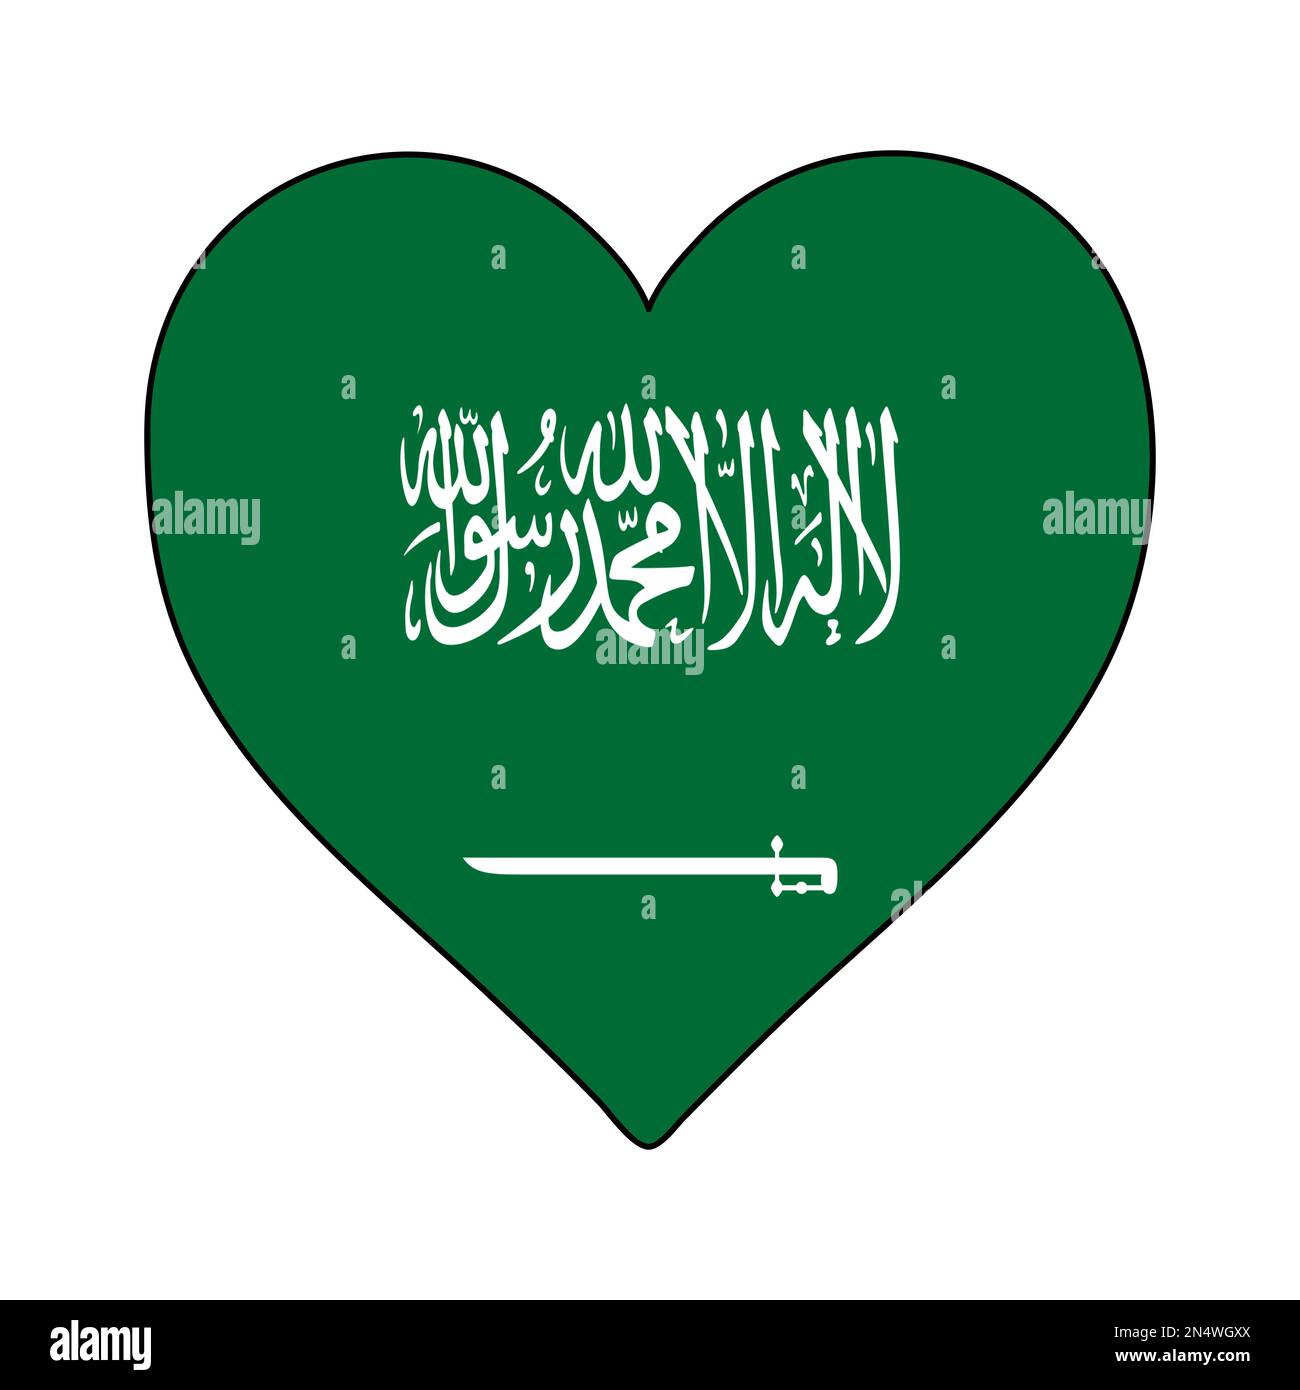 Arabia Saudita Heart Shape Flag. Amo a Arabia Saudita. Visita Arabia Saudita. Oriente Medio. Asia occidental. Asia. Ilustración vectorial Diseño gráfico. Ilustración del Vector